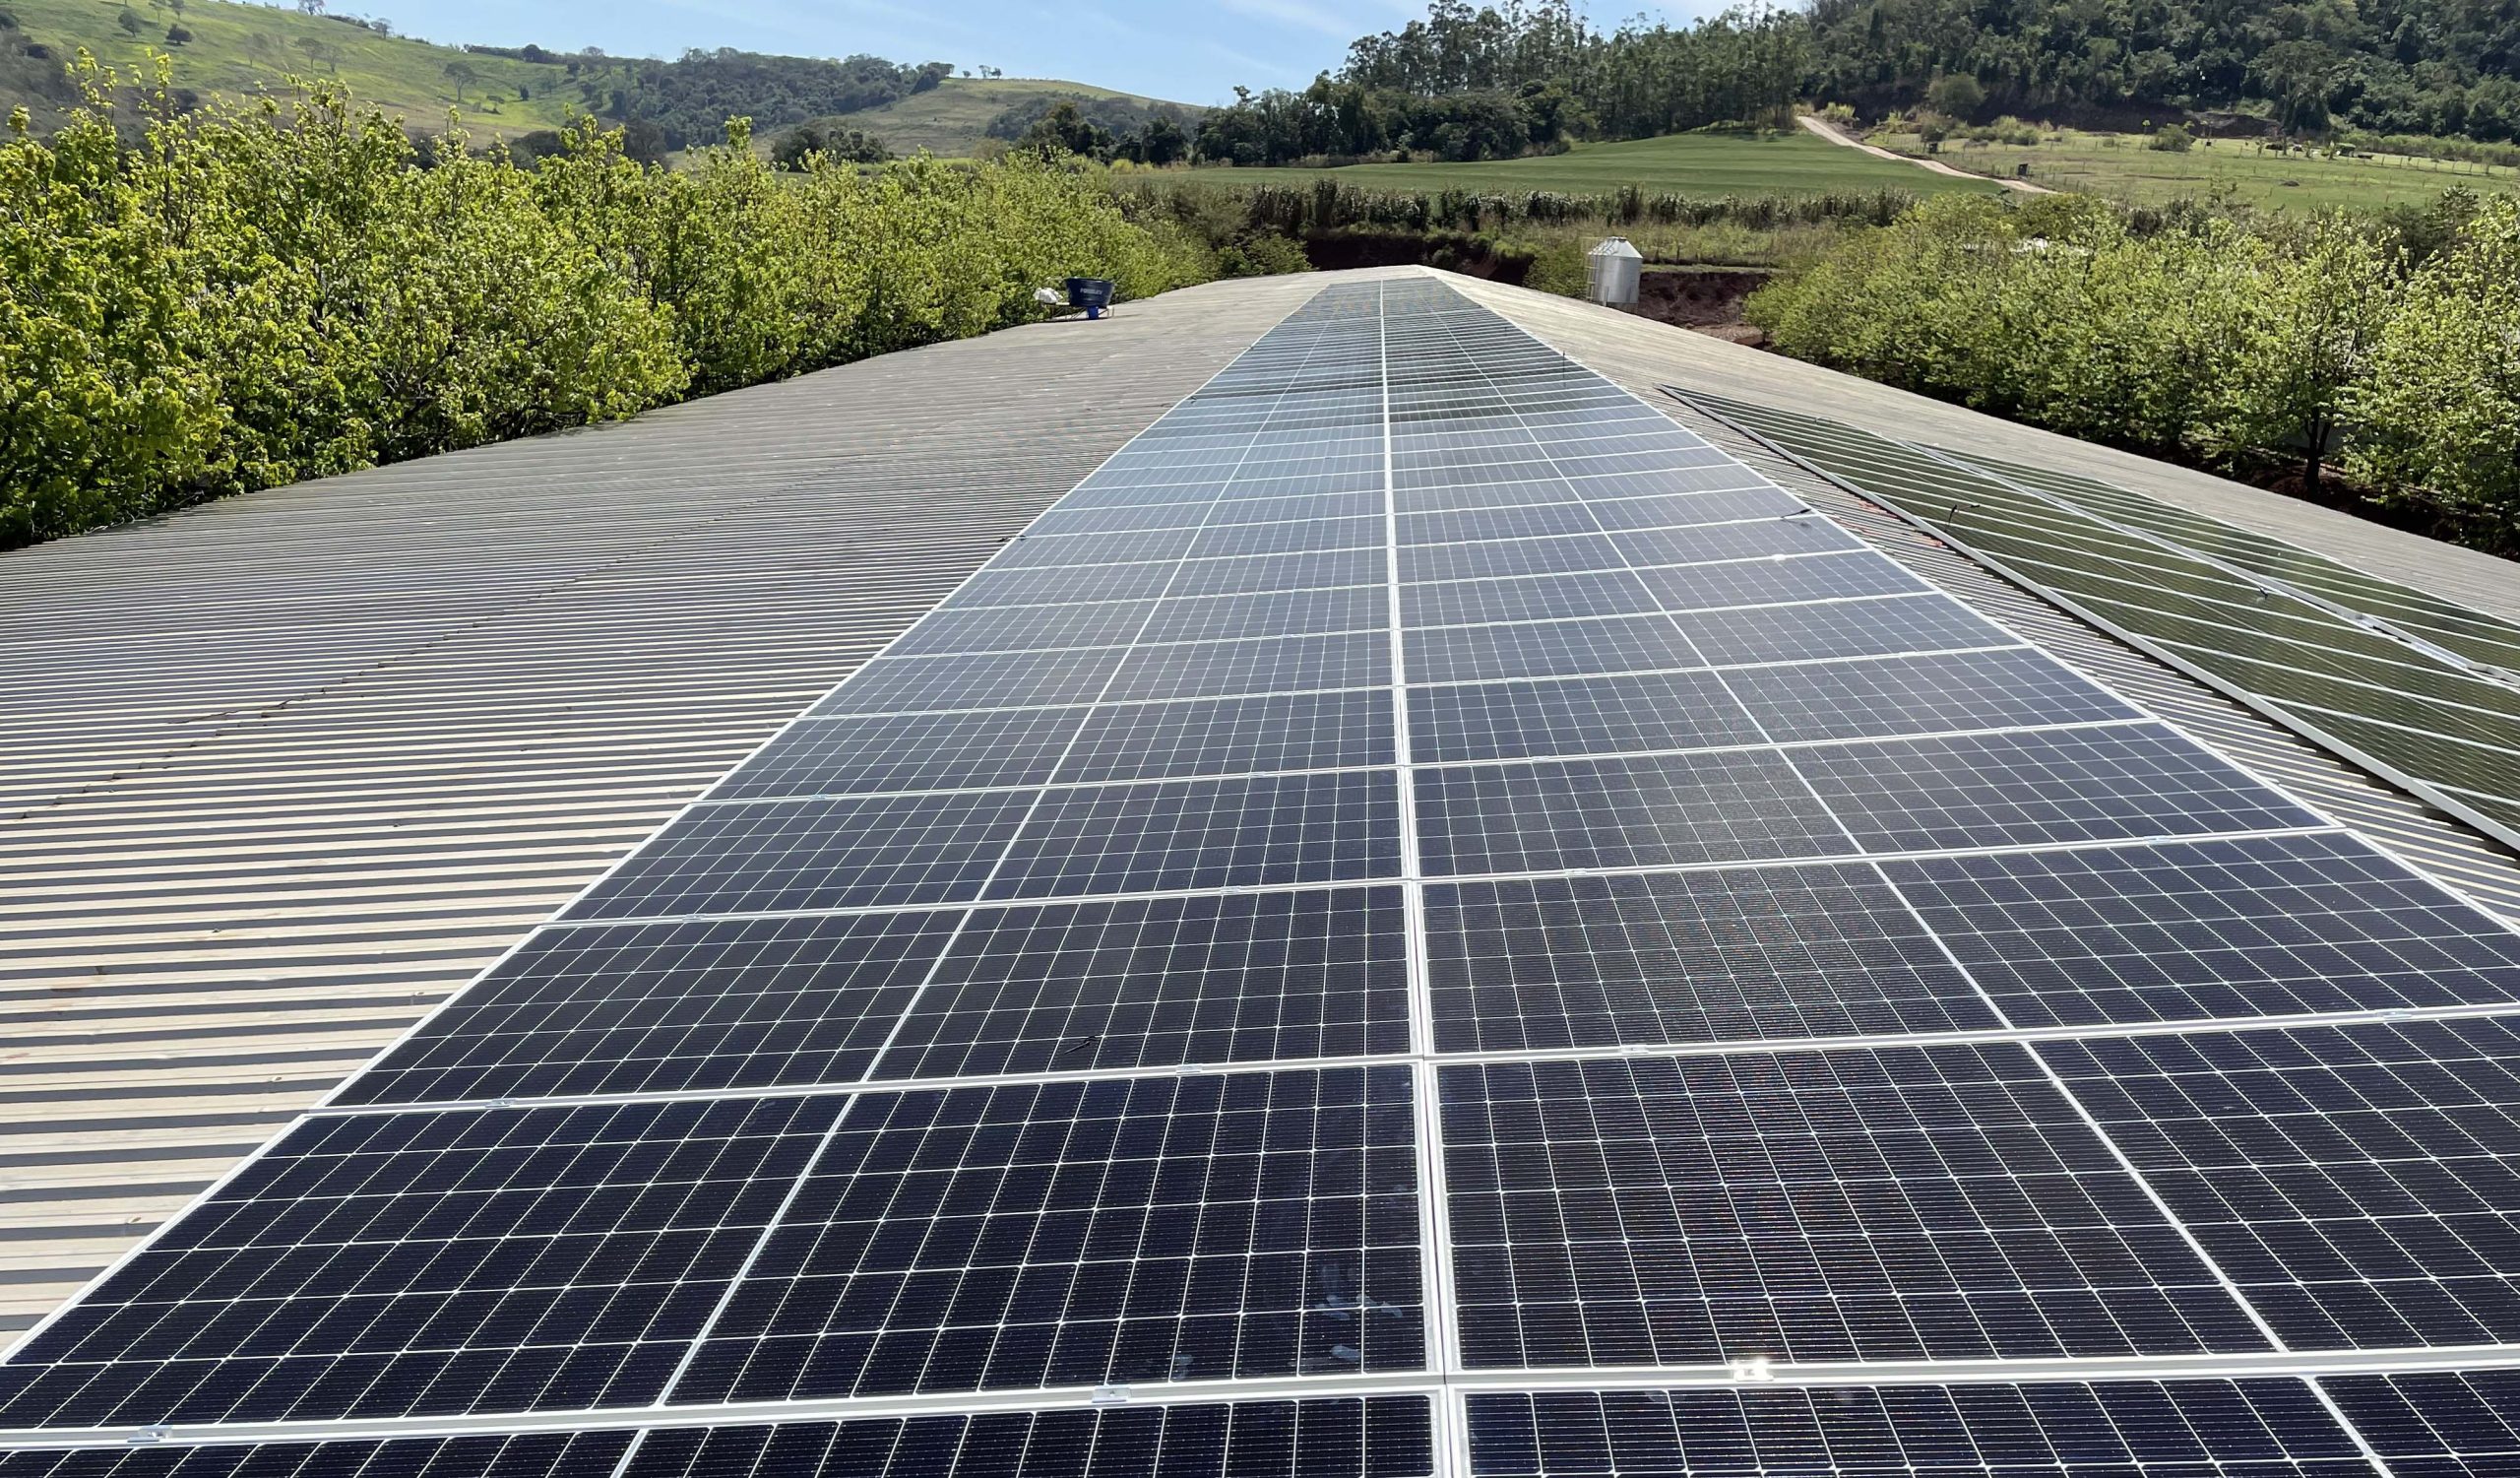 A Solar Serra trabalha exclusivamente com produtos WEG, uma multinacional brasileira com sede na cidade de Jaraguá do Sul – SC que está no mercado há 60 anos. Além de ser uma das maiores produtoras de motores elétricos do mundo a WEG também atua em outros setores, sendo um deles a Energia Solar.